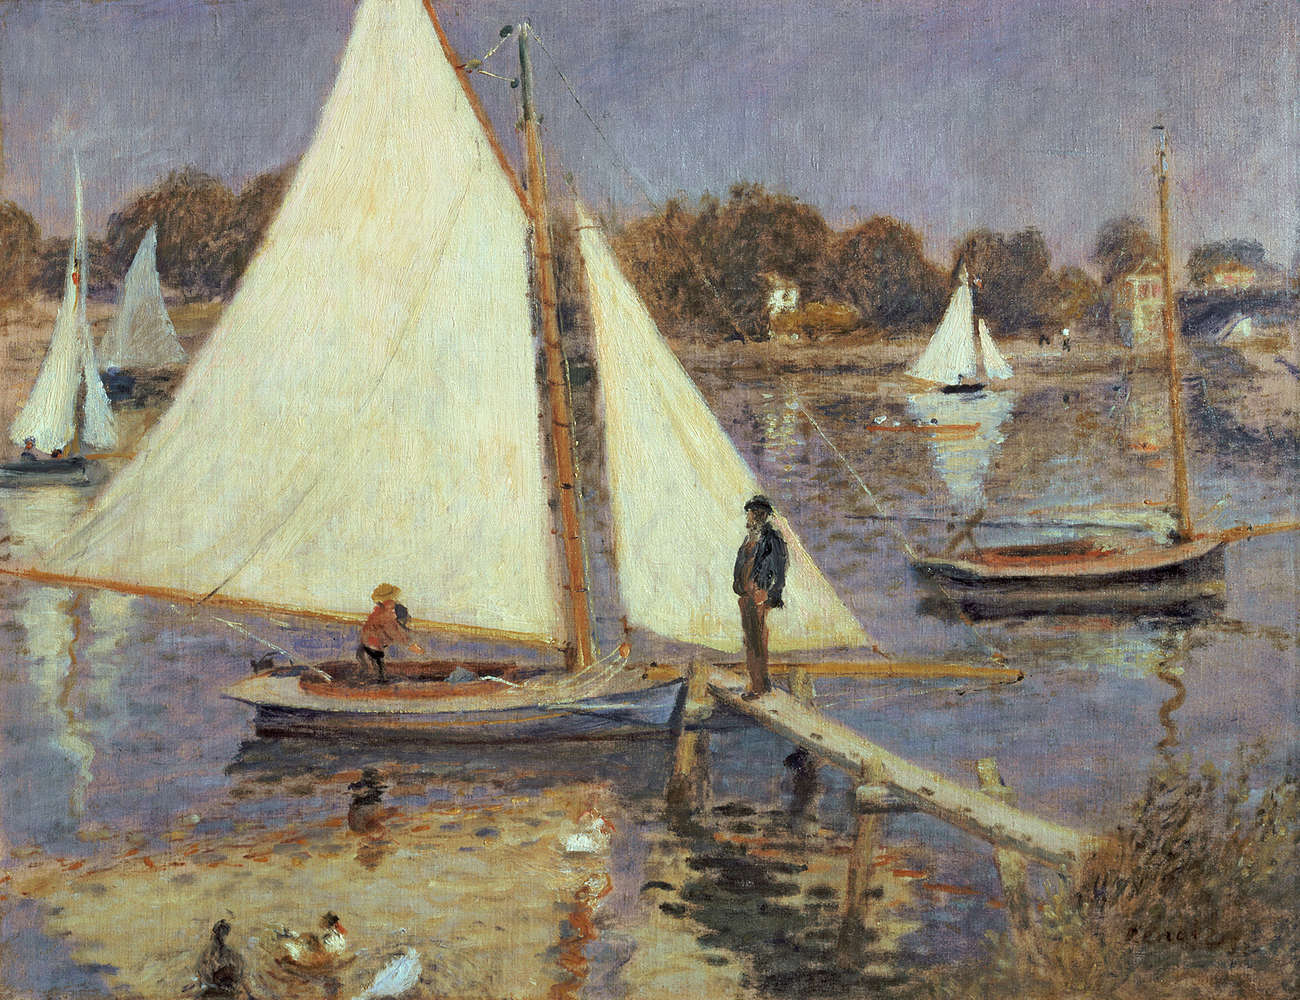             De Seine bij Argenteuil" muurschildering van Pierre Auguste Renoir
        